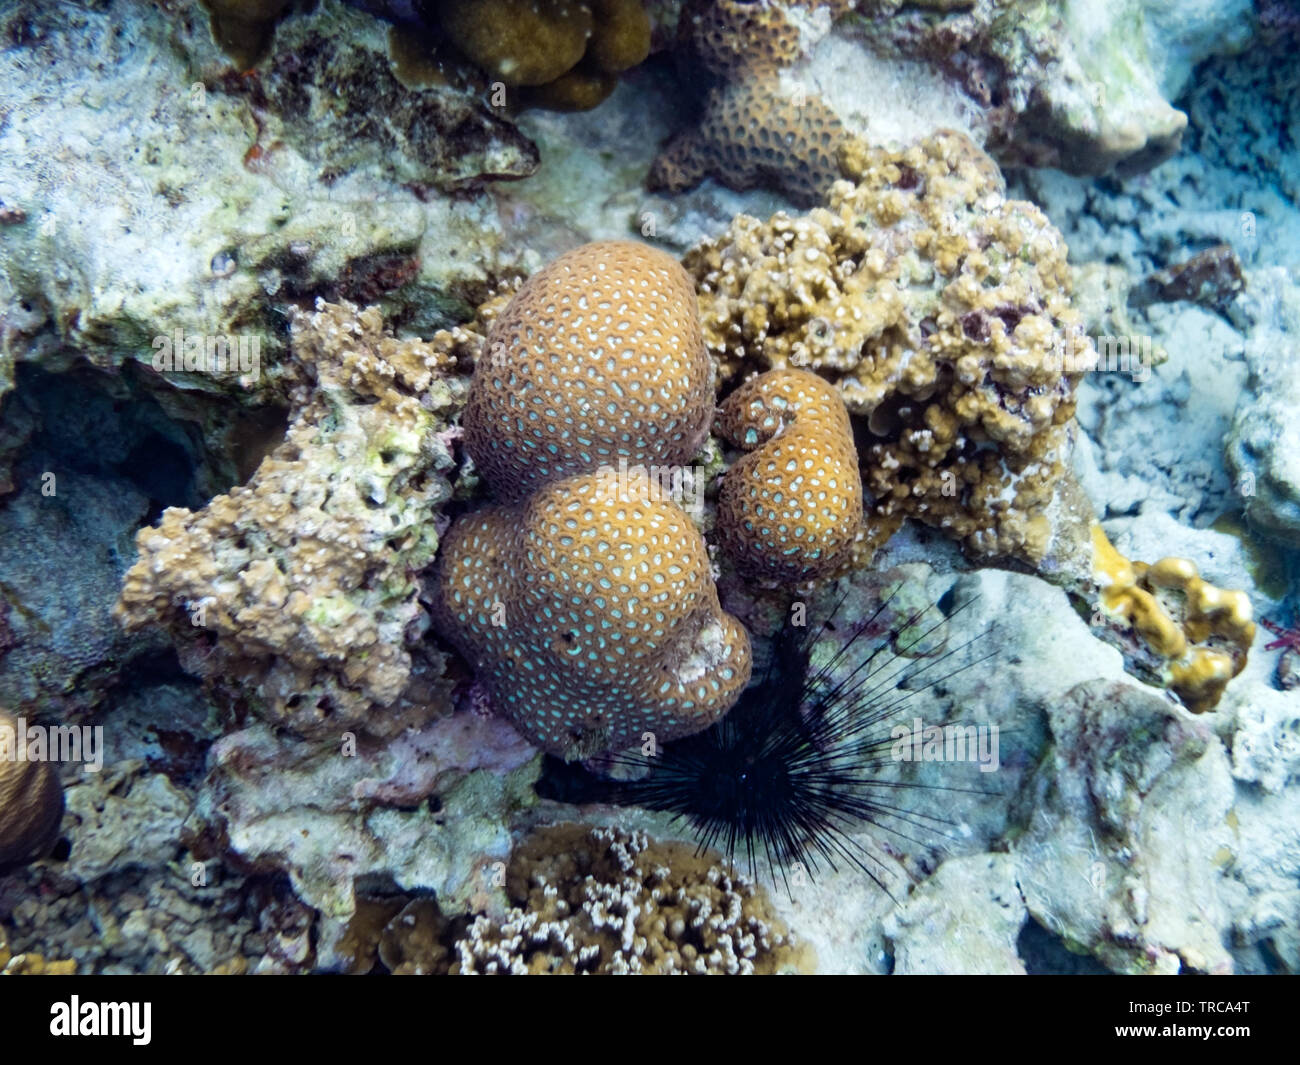 Big coral brain stone in lipe sea Stock Photo